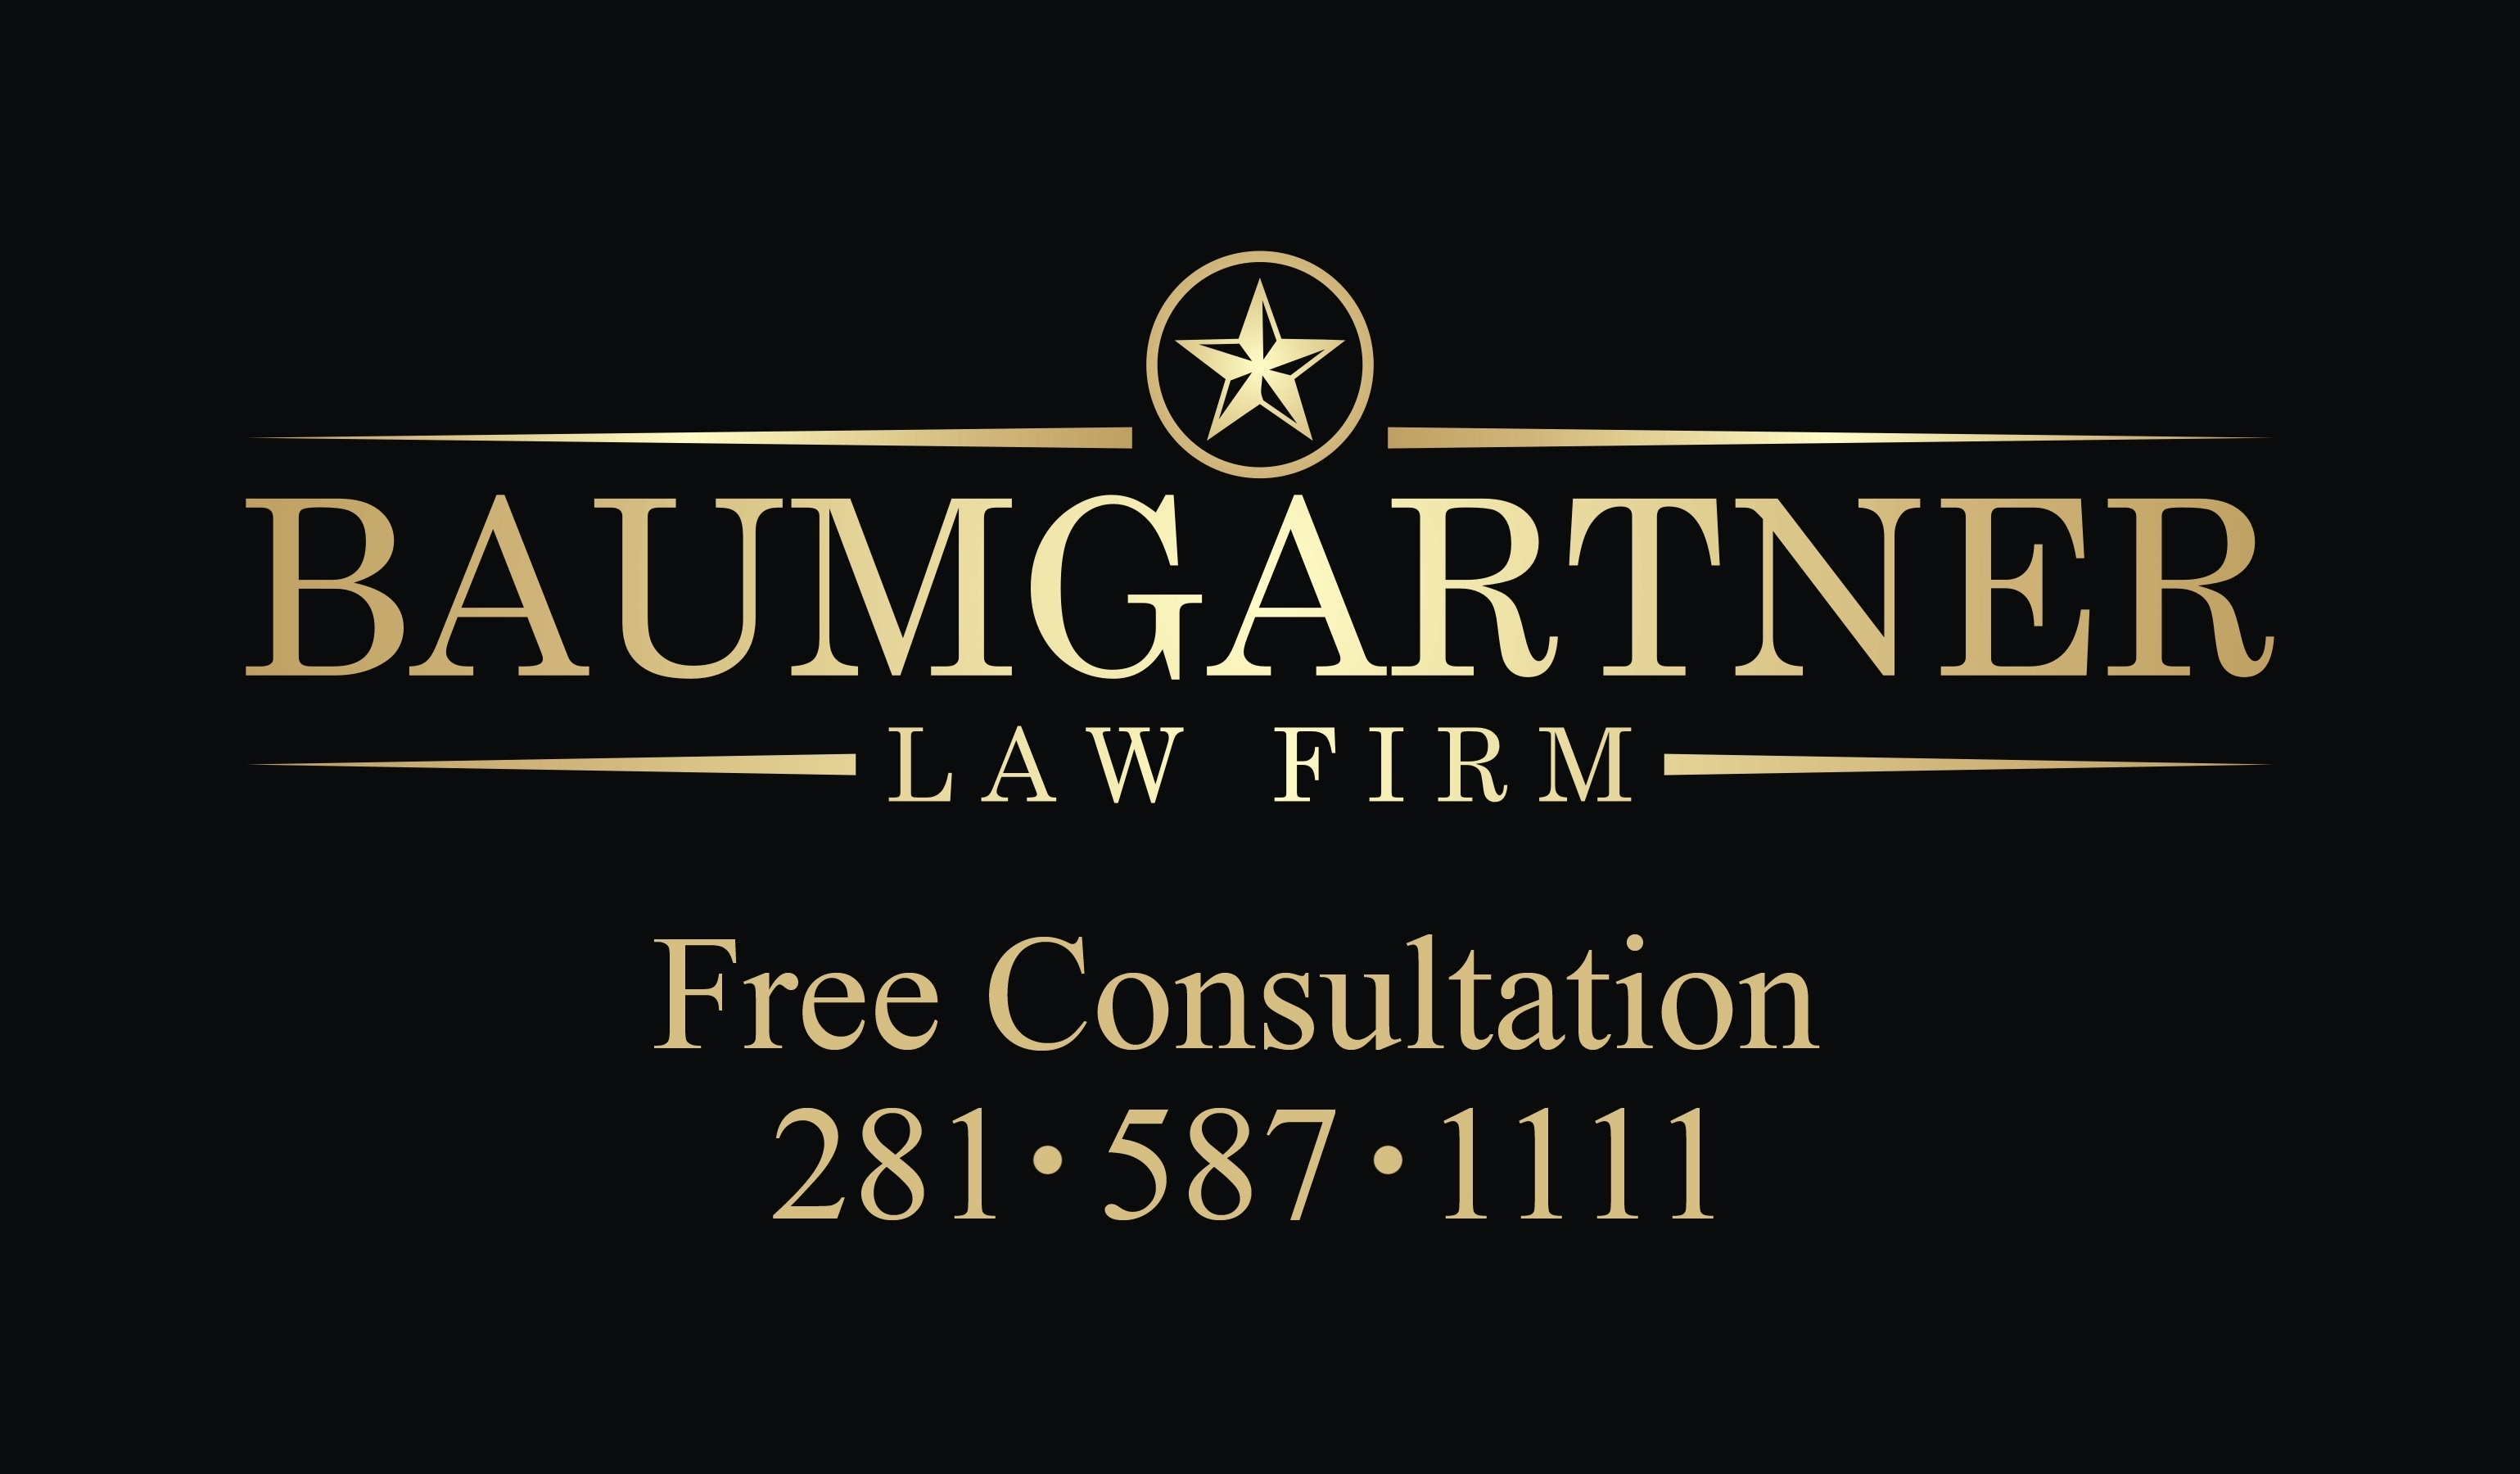 Baumgartner Law Firm Image